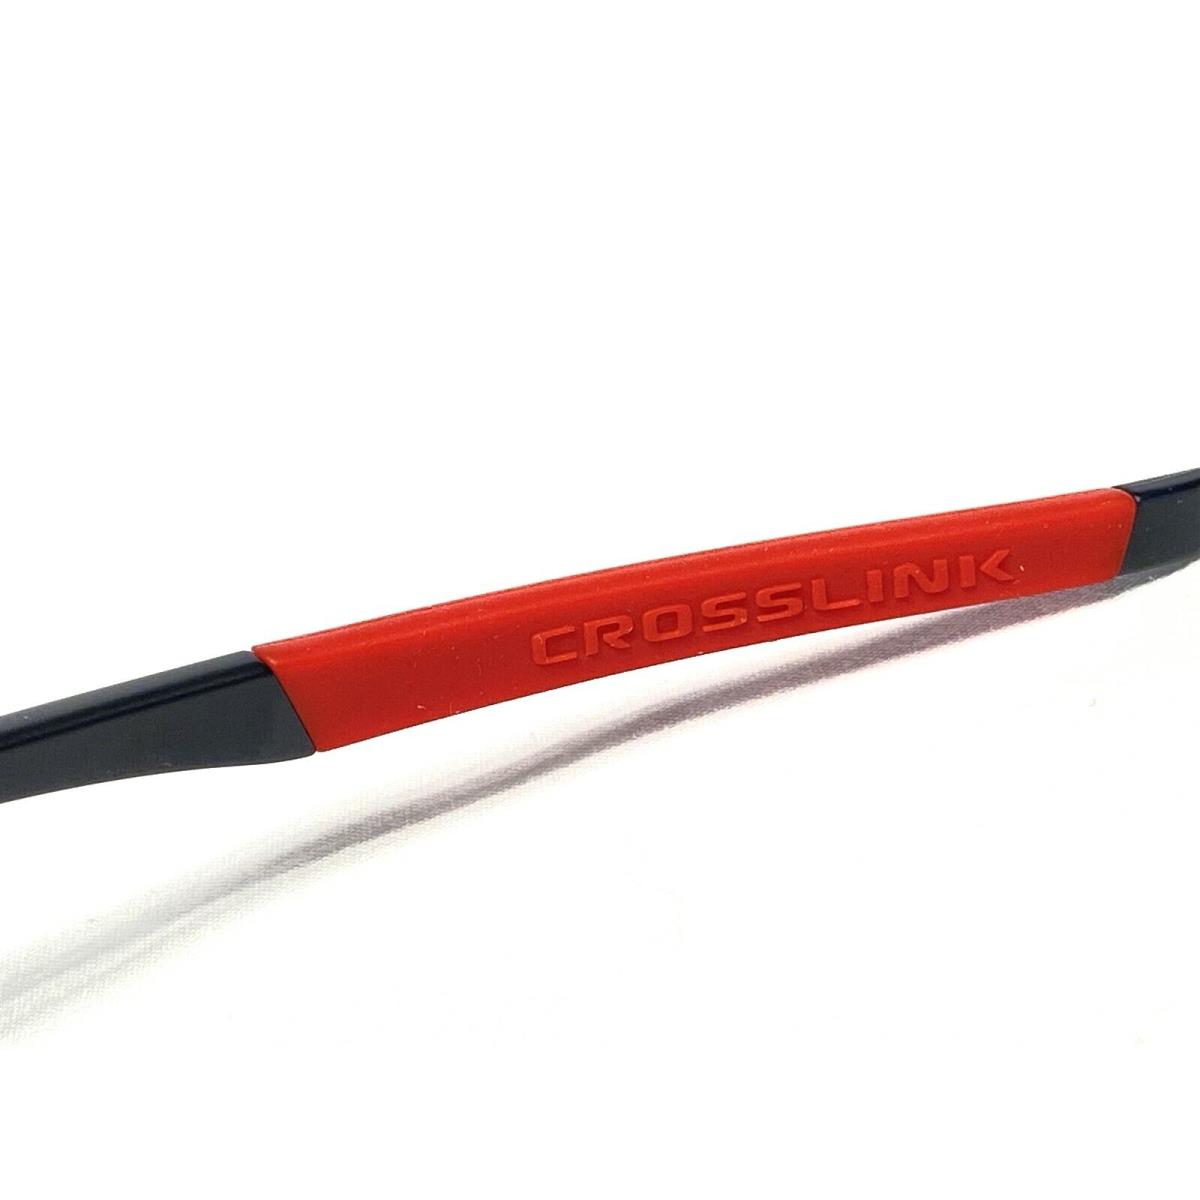 Oakley eyeglasses  - Satin Black/Red , Satin Black/Red Frame, 0456 Manufacturer